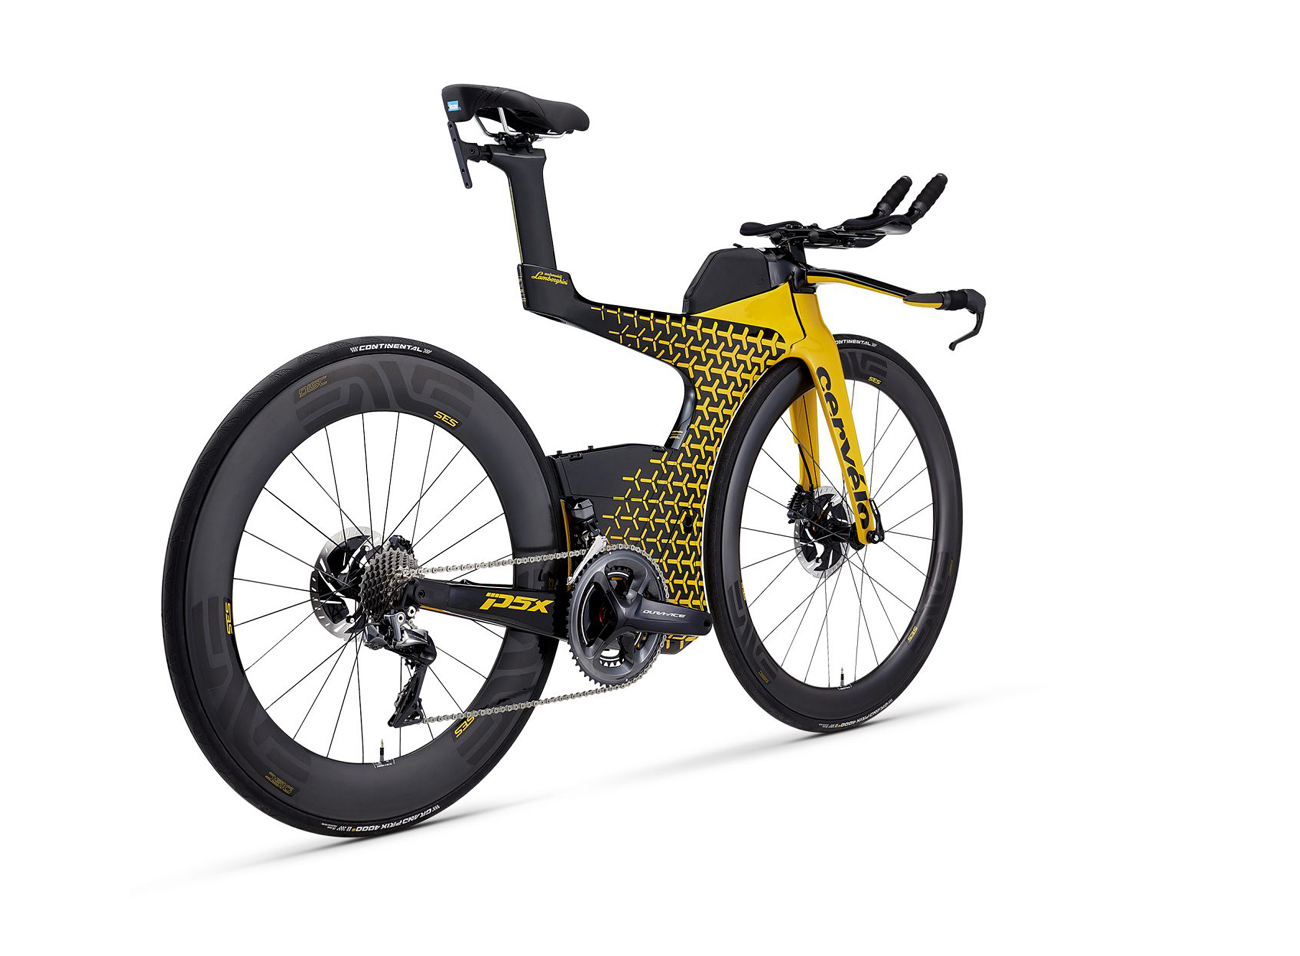 New Cervelo Triathlon Bike 'PX5 Lamborghini Edition'